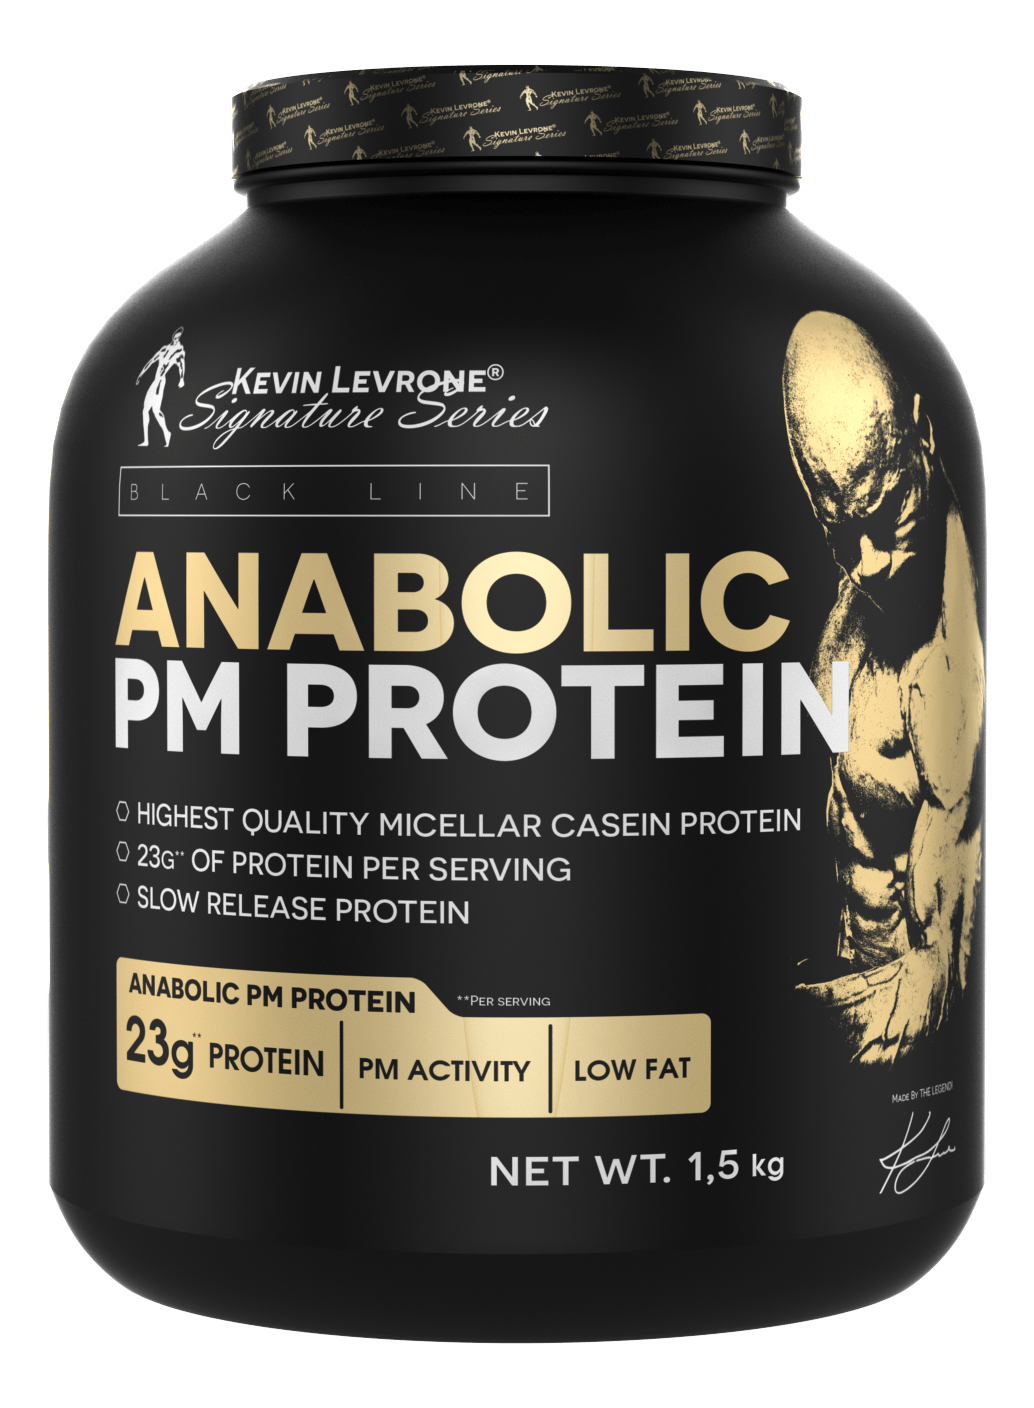 Протеин Kevin Levrone Anabolic PM Protein, 1.5 кг Ваниль СРОК 04.21,  мл, Kevin Levrone. Протеин. Набор массы Восстановление Антикатаболические свойства 